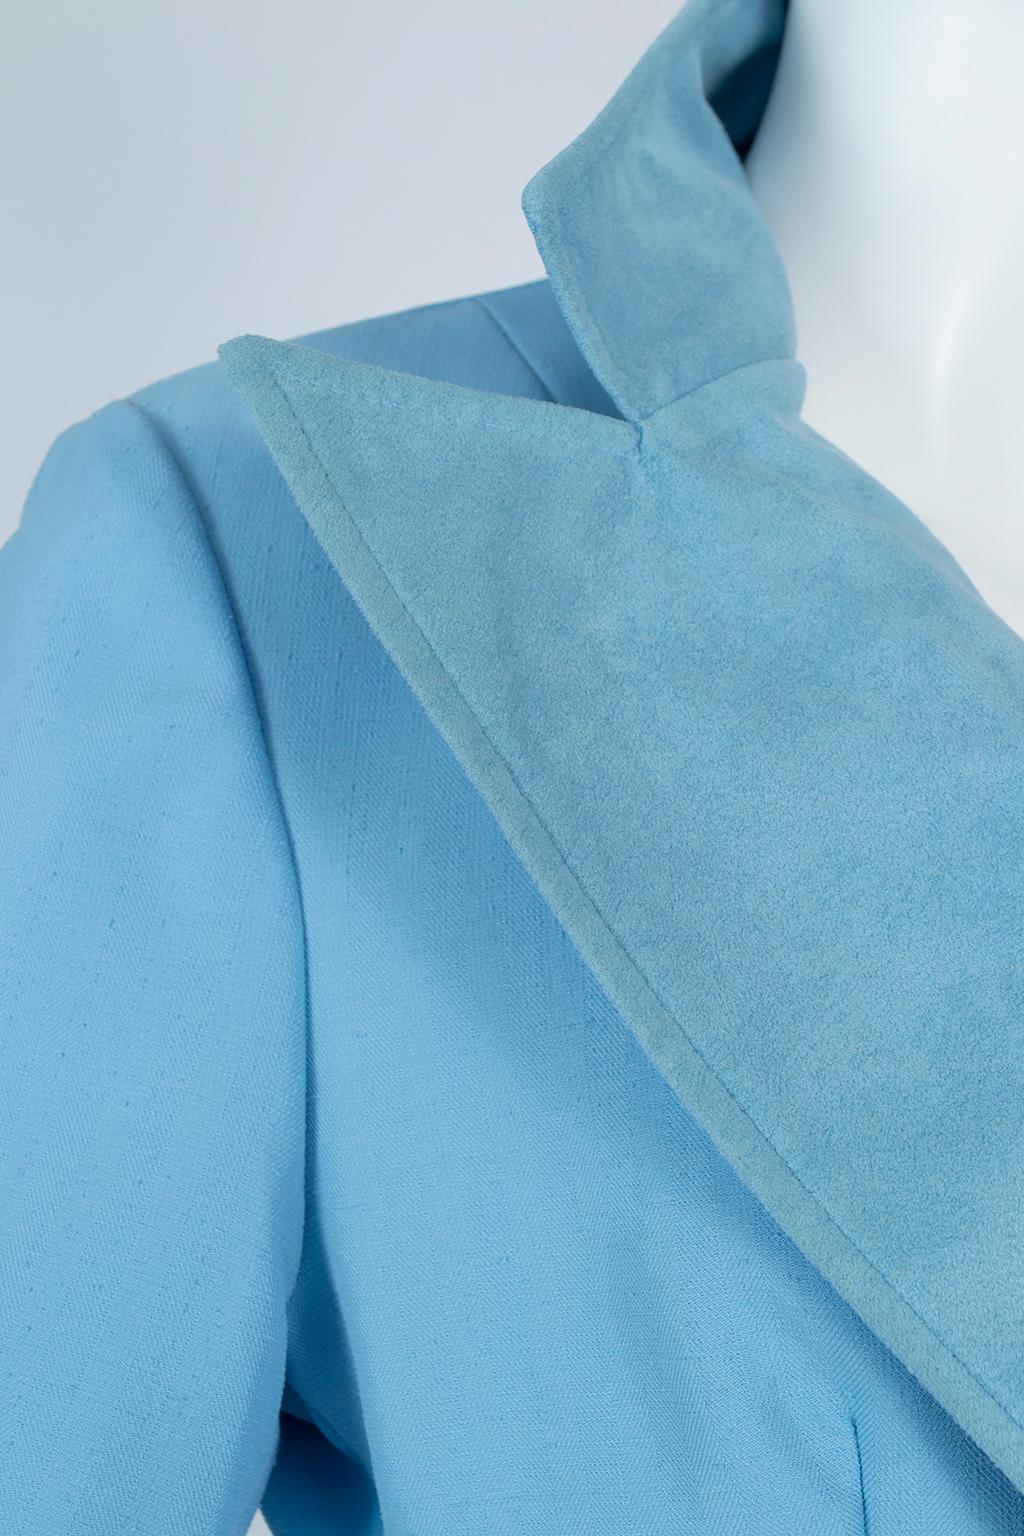 Lilli Ann Paris Powder Blue 3-Piece Western Pant Suit – XS, 1970s For Sale 5